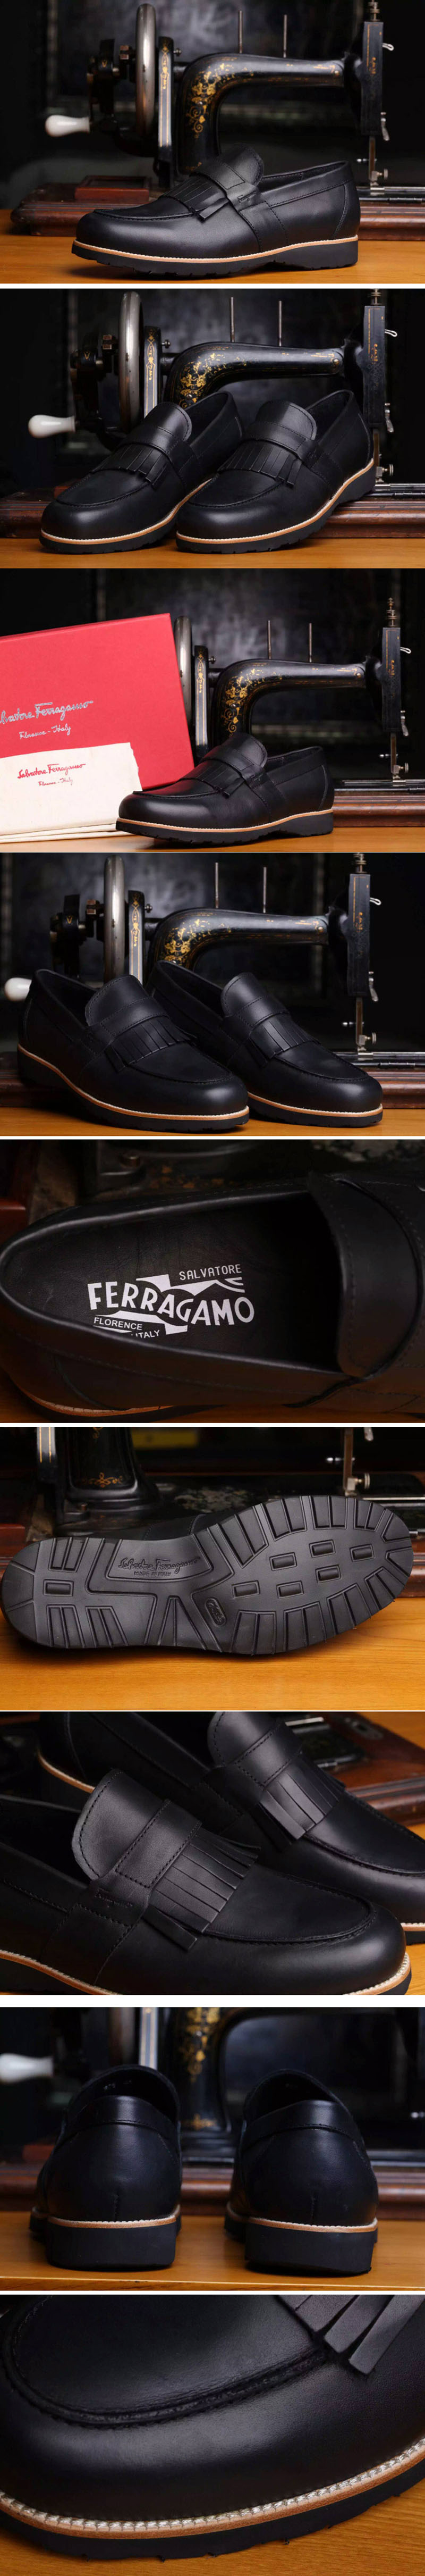 Replica Ferragamo Shoes